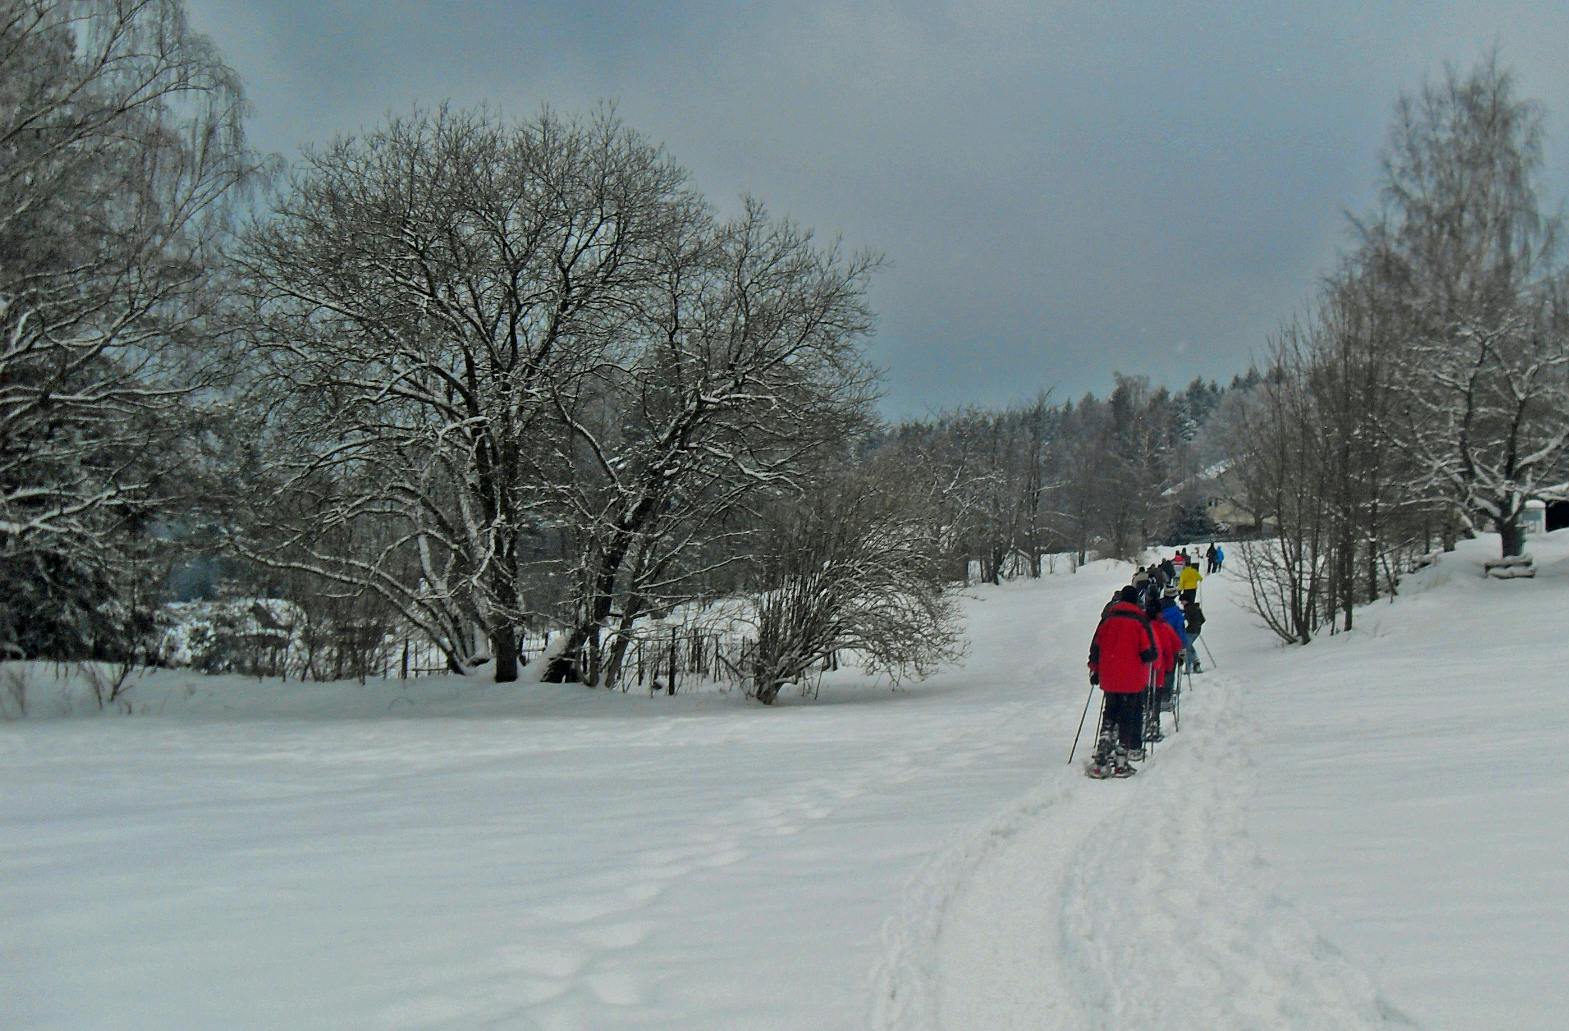 Wanderung mit Schneeschuhen | Abenteuer in Winterlandschaft